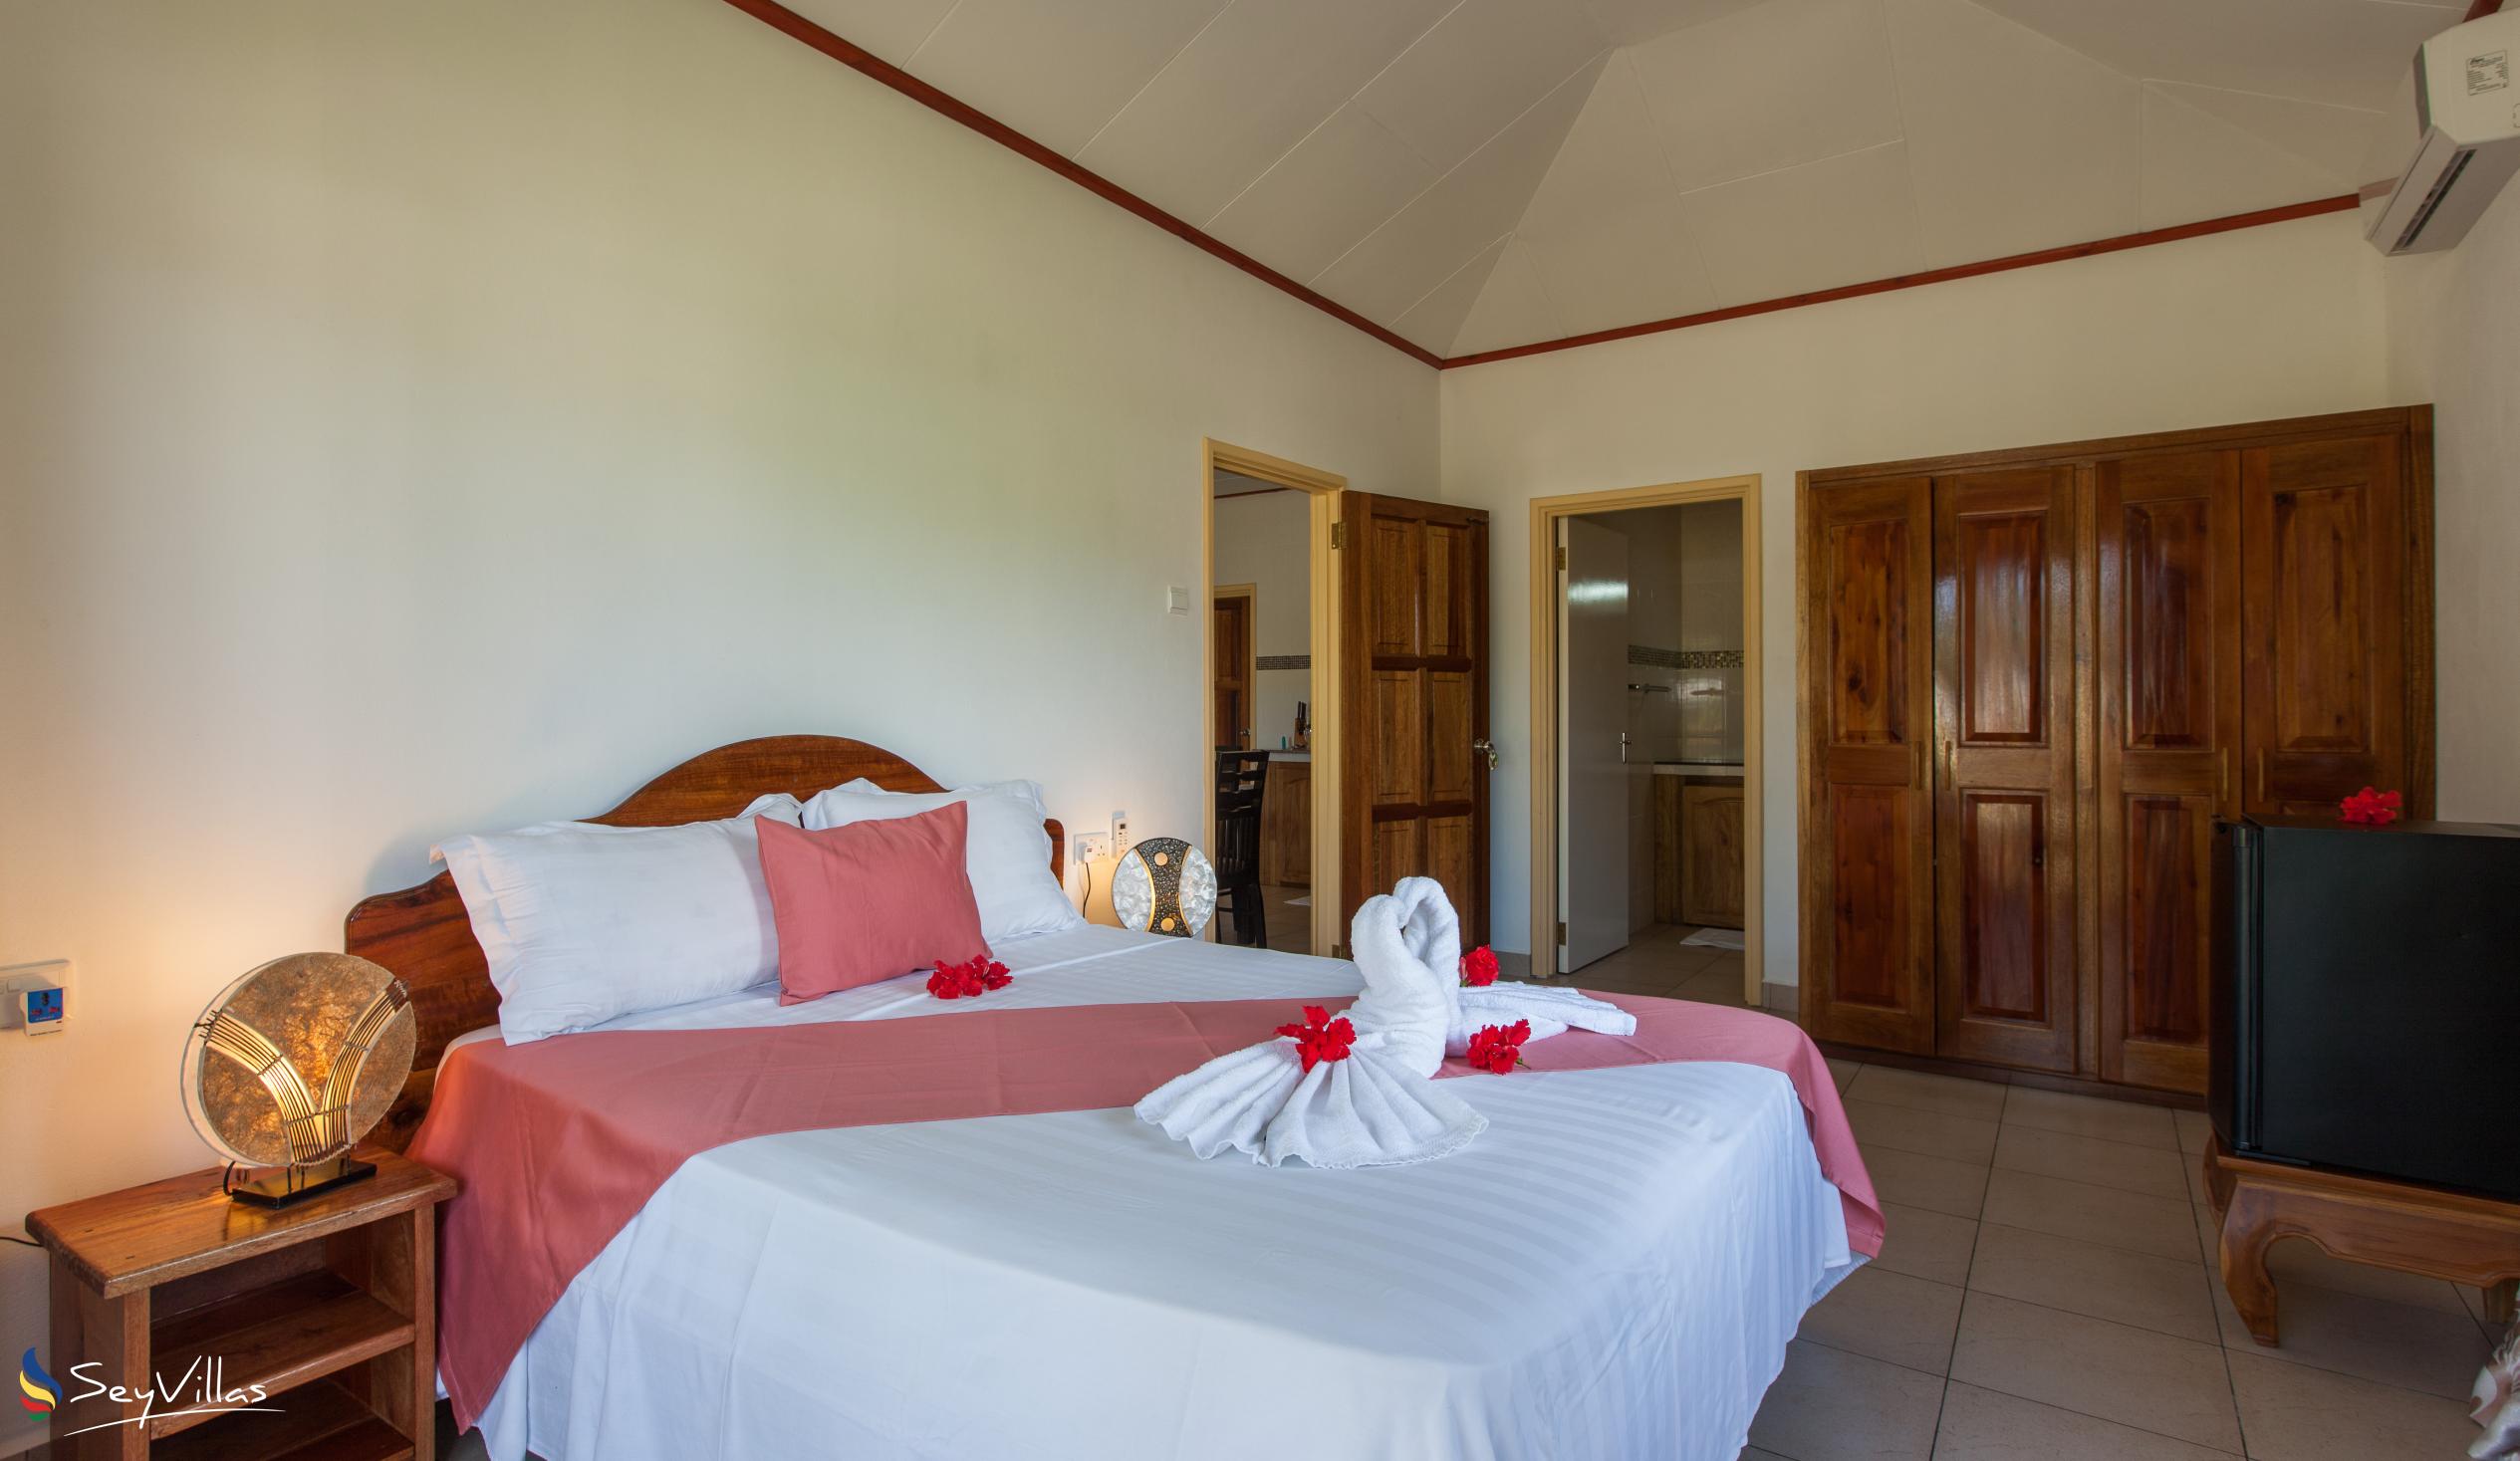 Foto 62: Hostellerie La Digue - Chalet mit 2 Schlafzimmern - La Digue (Seychellen)